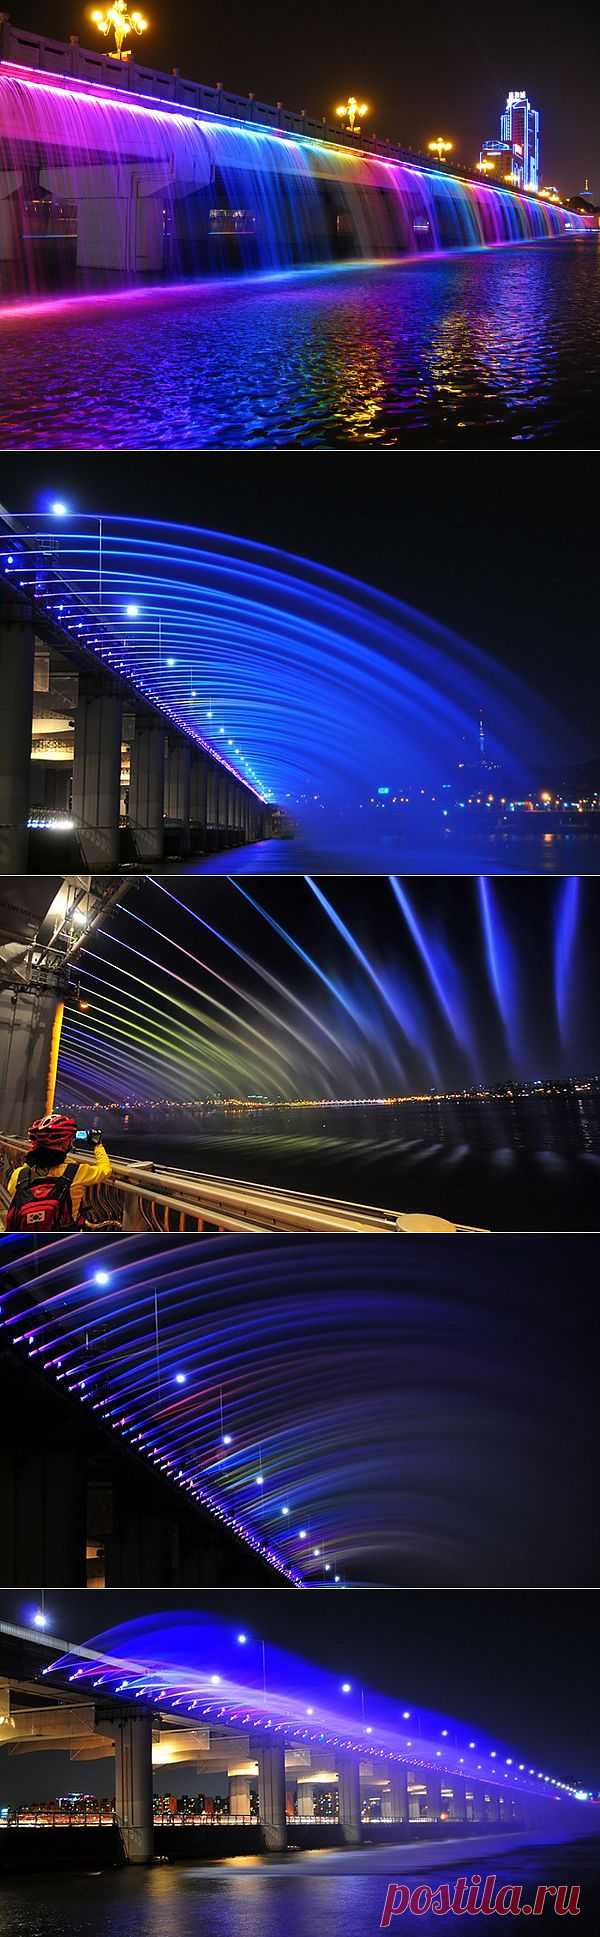 Мост  Фонтан  радуги.